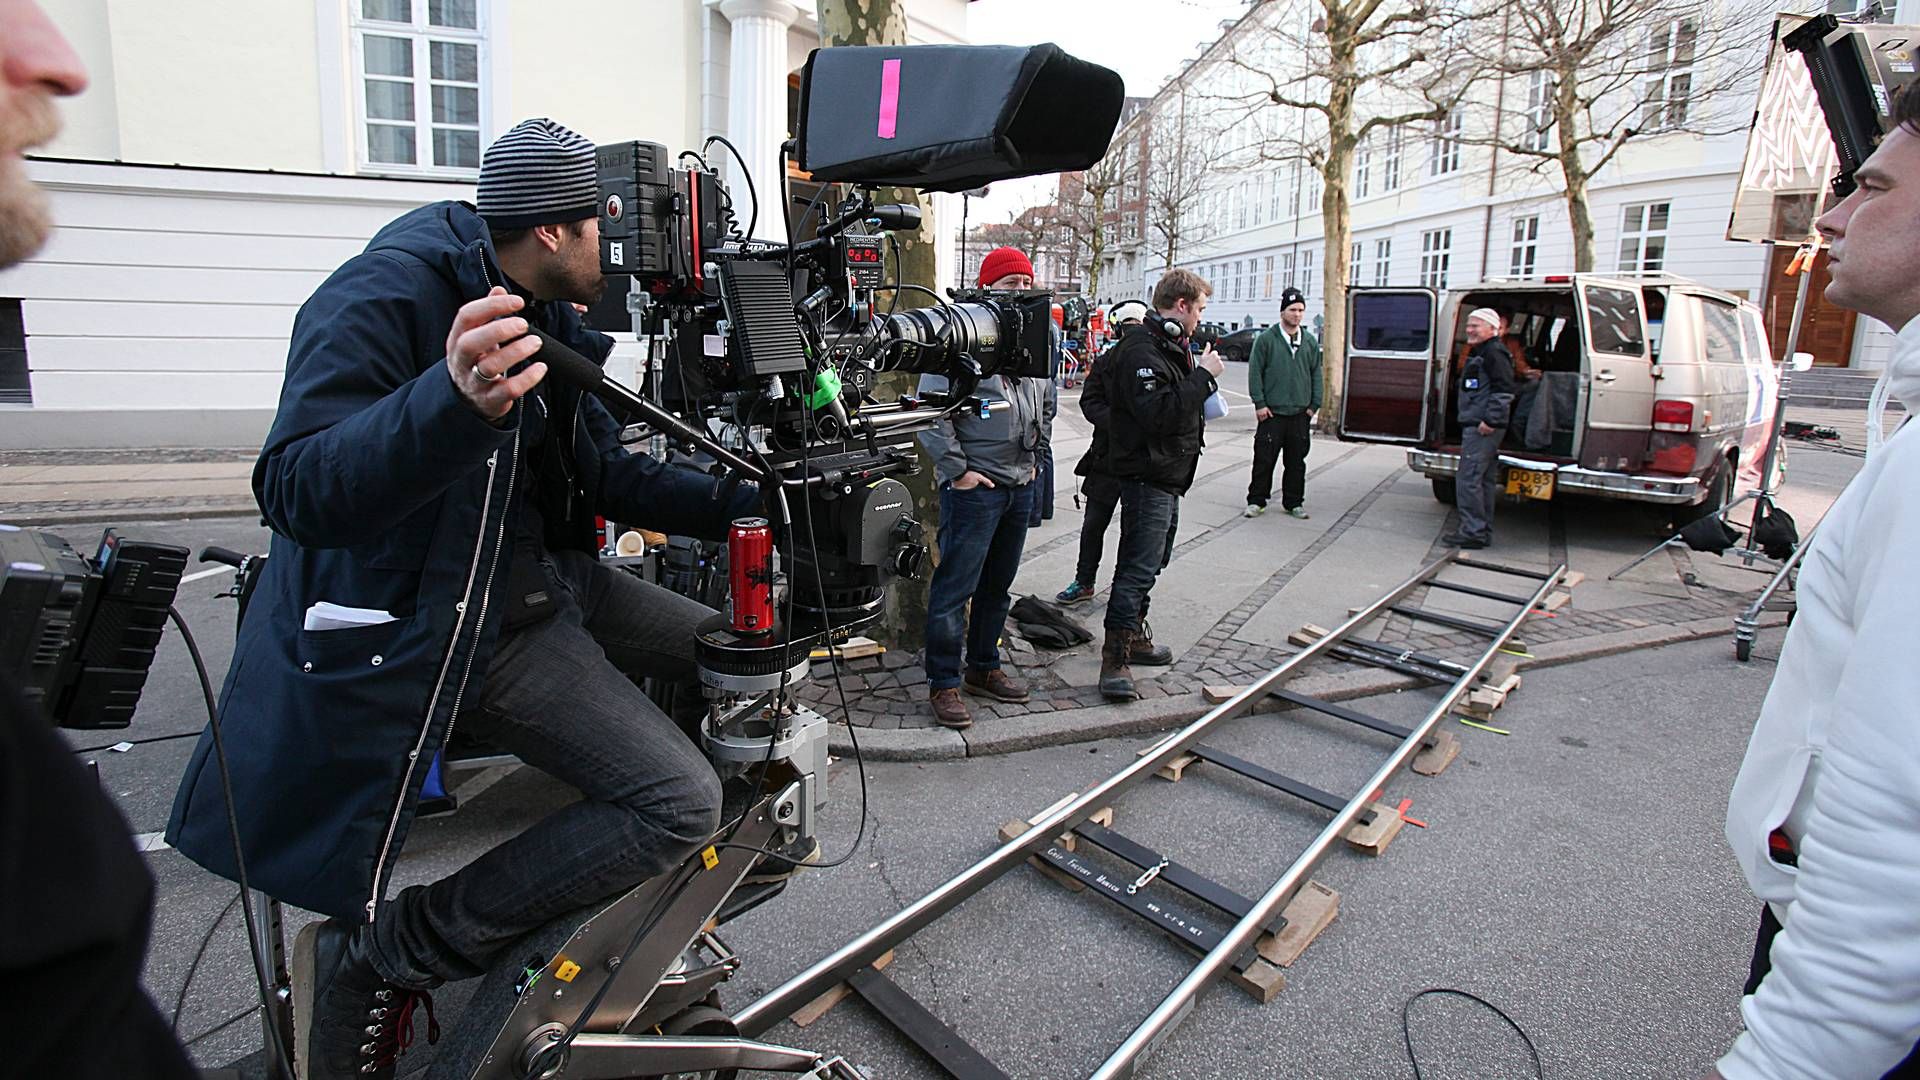 Den europæiske filmindustri er i høj grad afhængig af rabatter til produktion, viser ny rapport. | Foto: Jan Unger